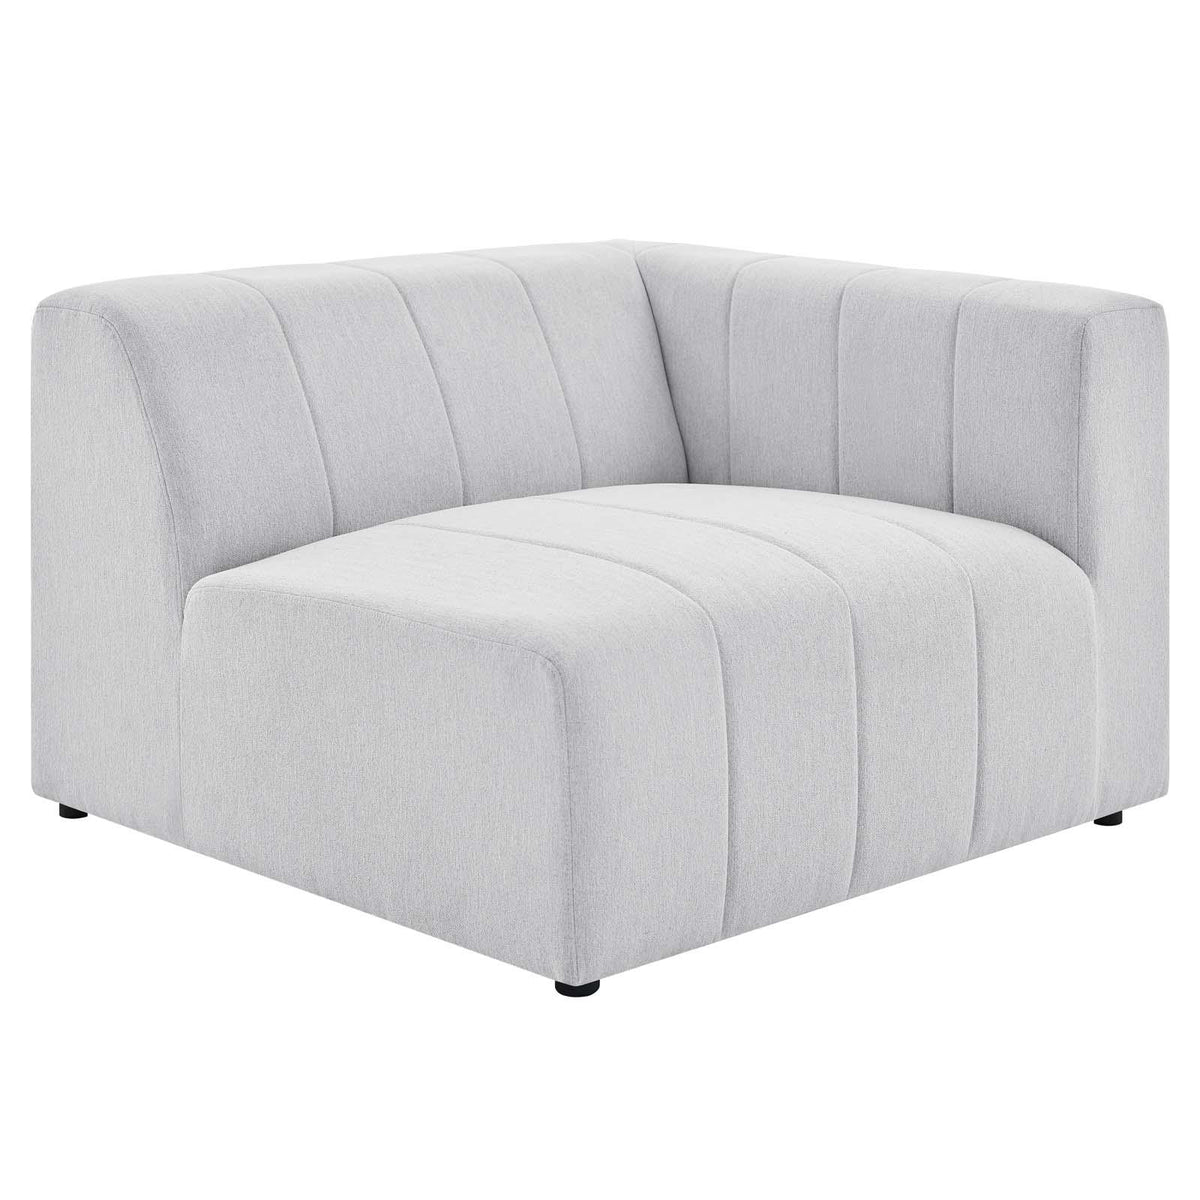 Modway Furniture Modern Bartlett Upholstered Fabric 5-Piece Sectional Sofa - EEI-4520